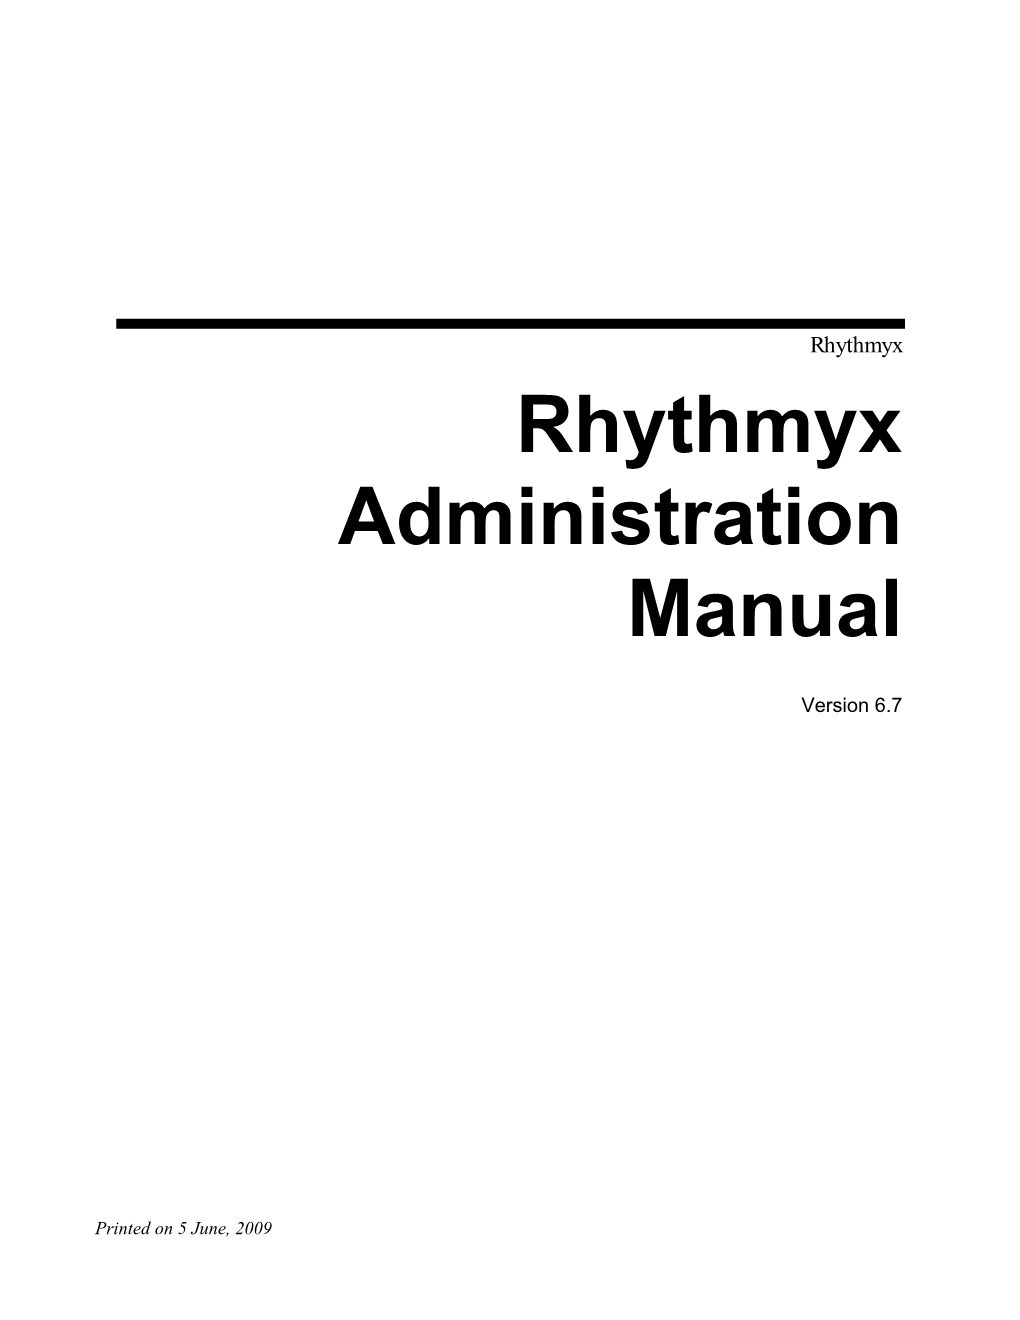 Rhythmyx Administration Manual